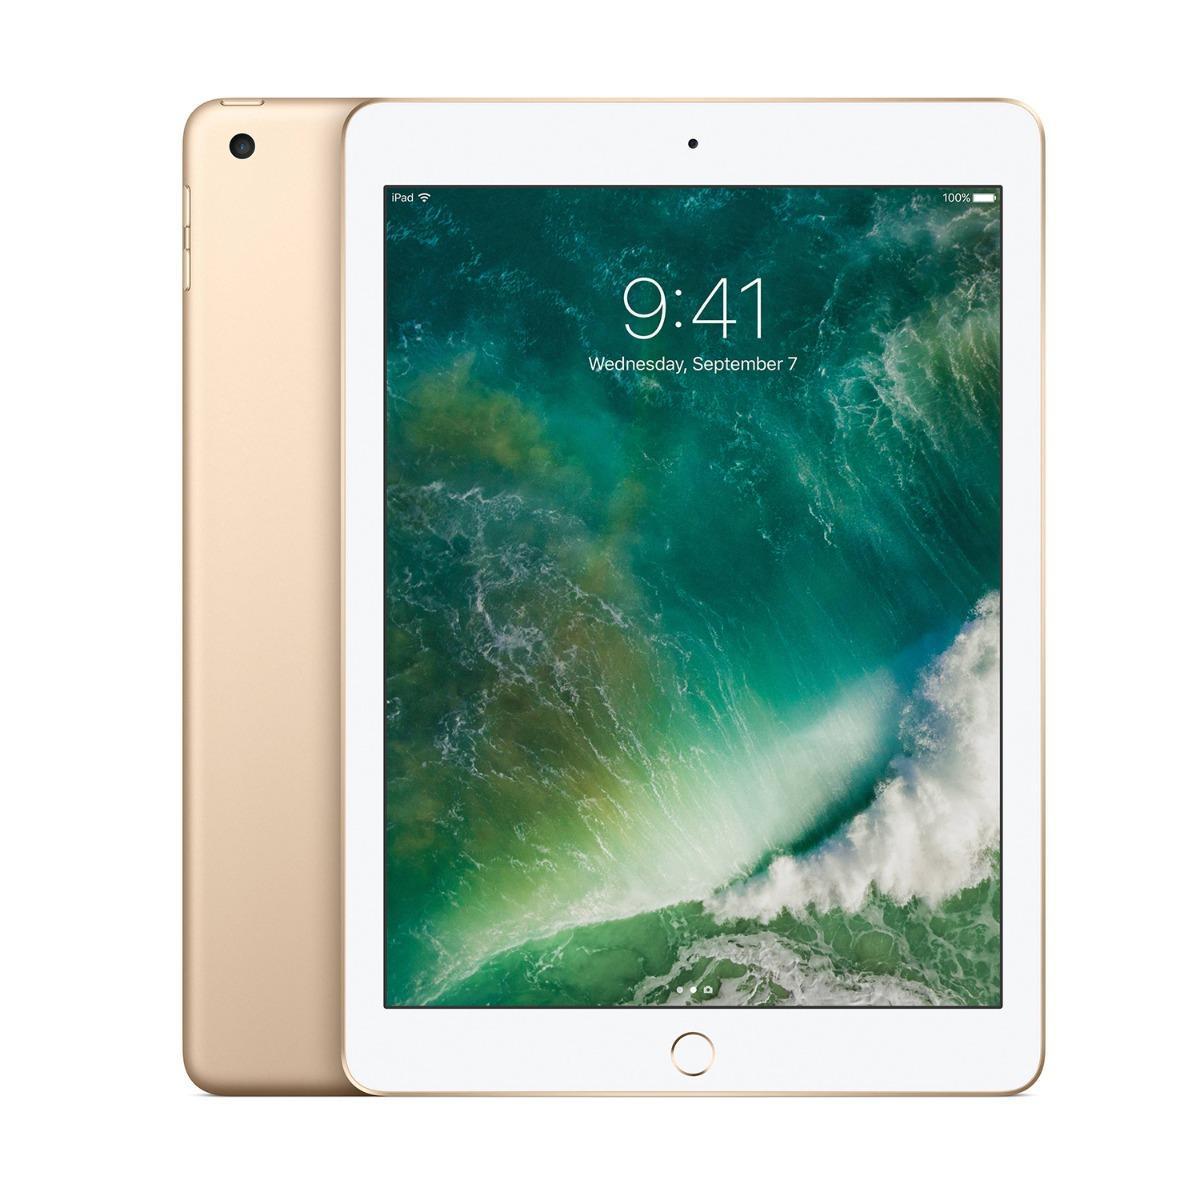 Apple iPad 5 128GB Wi-Fi Gold Very Good